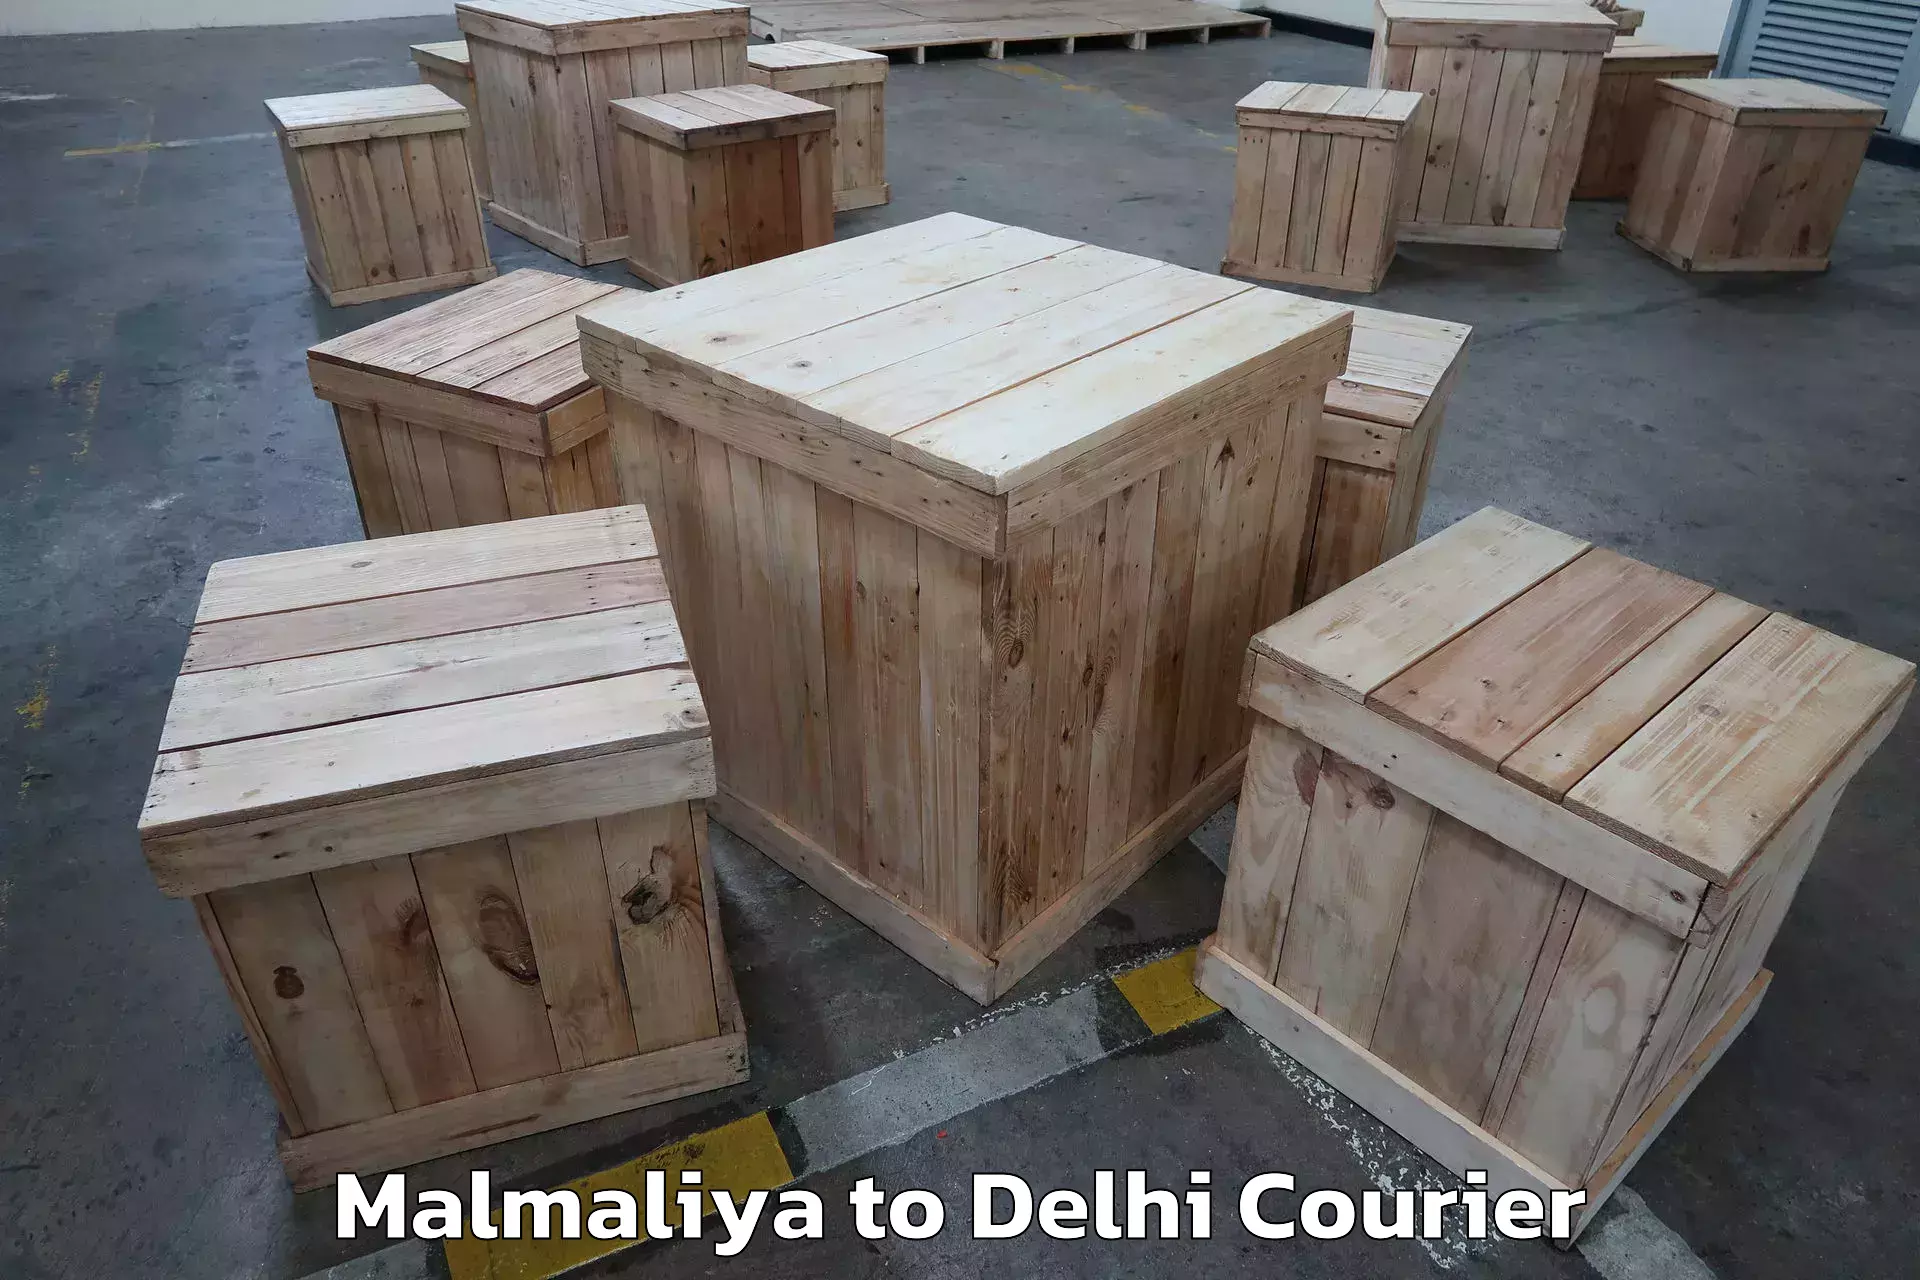 Trusted moving company Malmaliya to Delhi